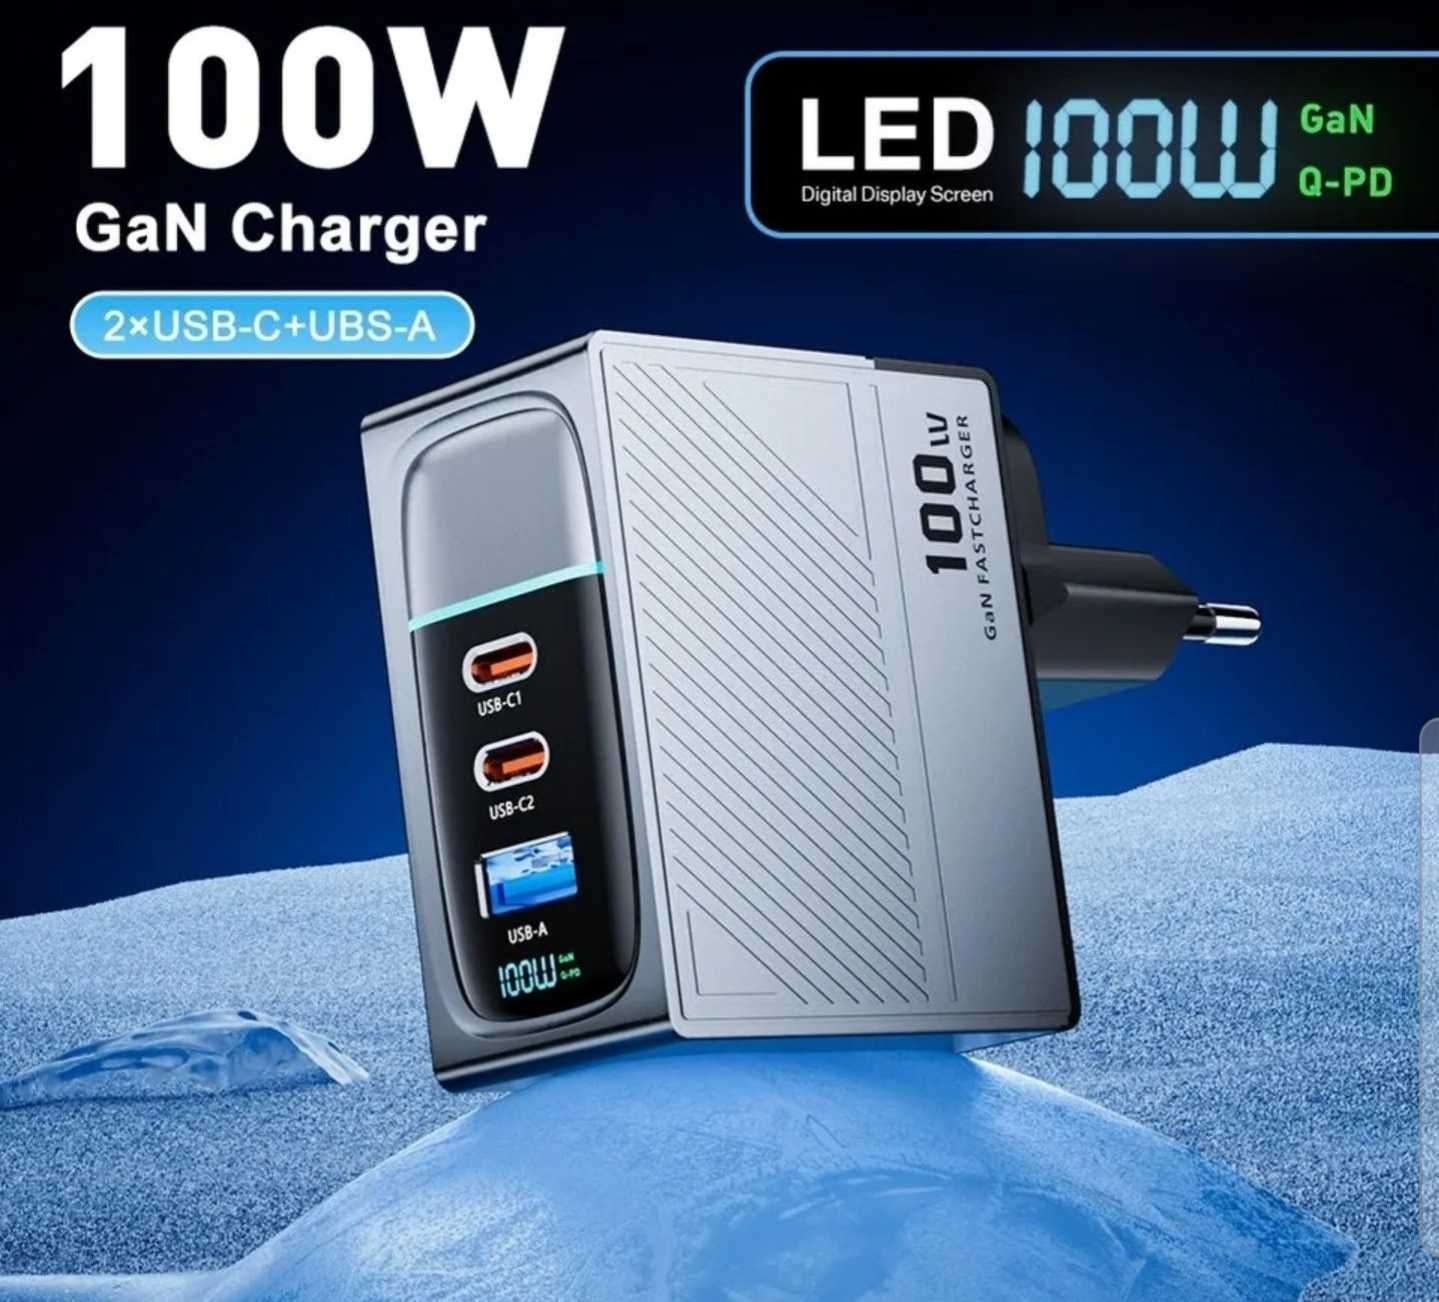 Încărcător Gan 100W telefon laptop super fast charge cu afișaj digital